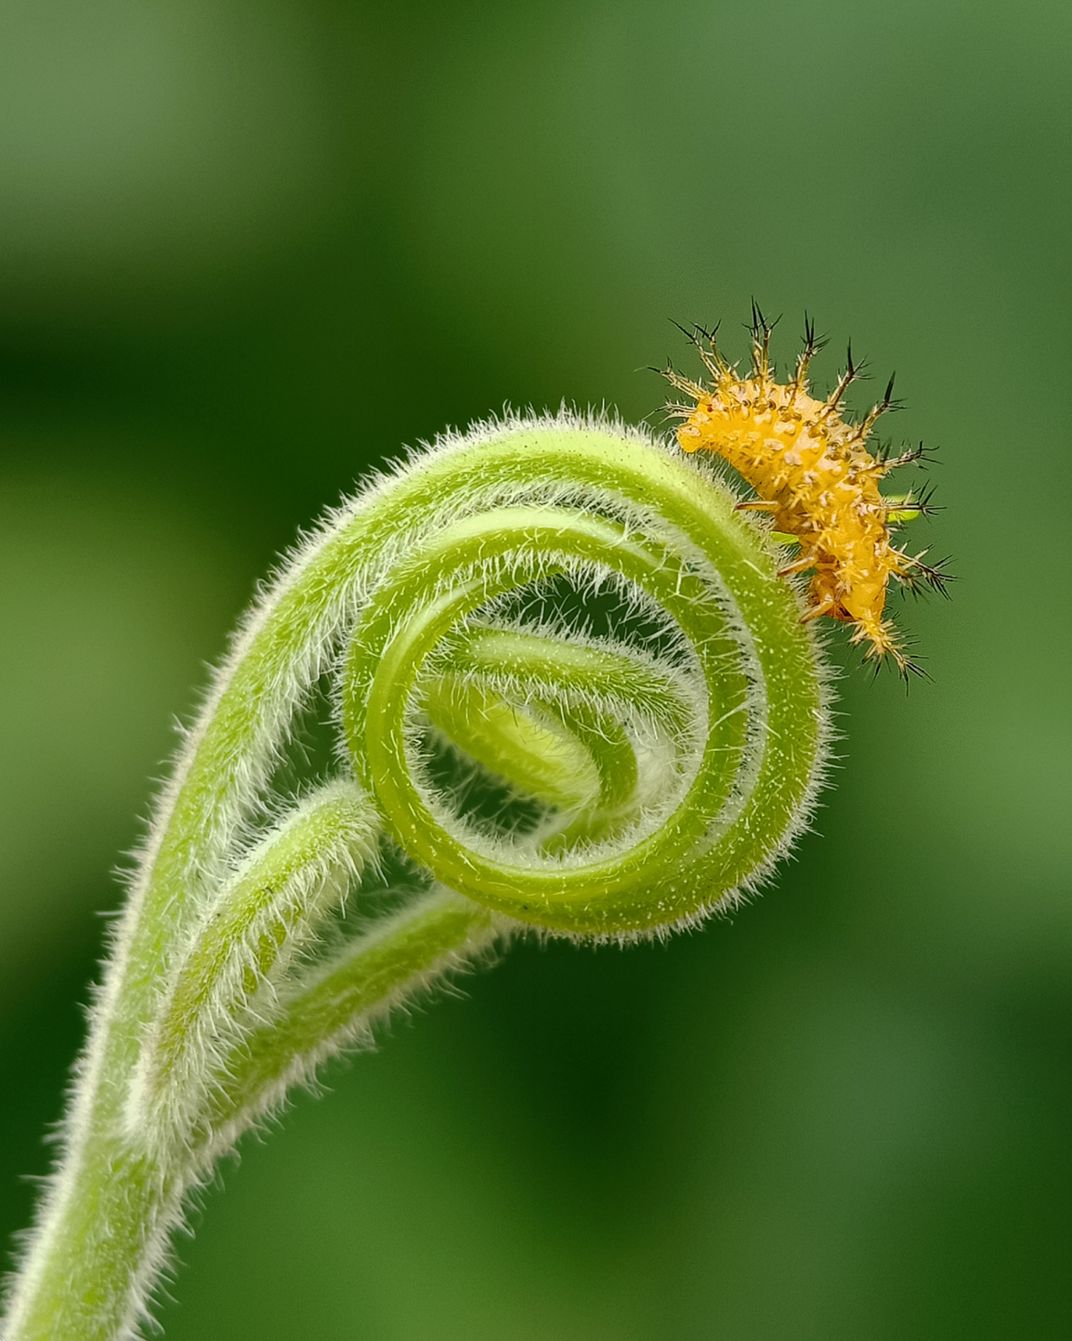 13 - Une larve de coccinelle se pose au bord de la vrille d'un plant de citrouille et se nourrit de ses feuilles.